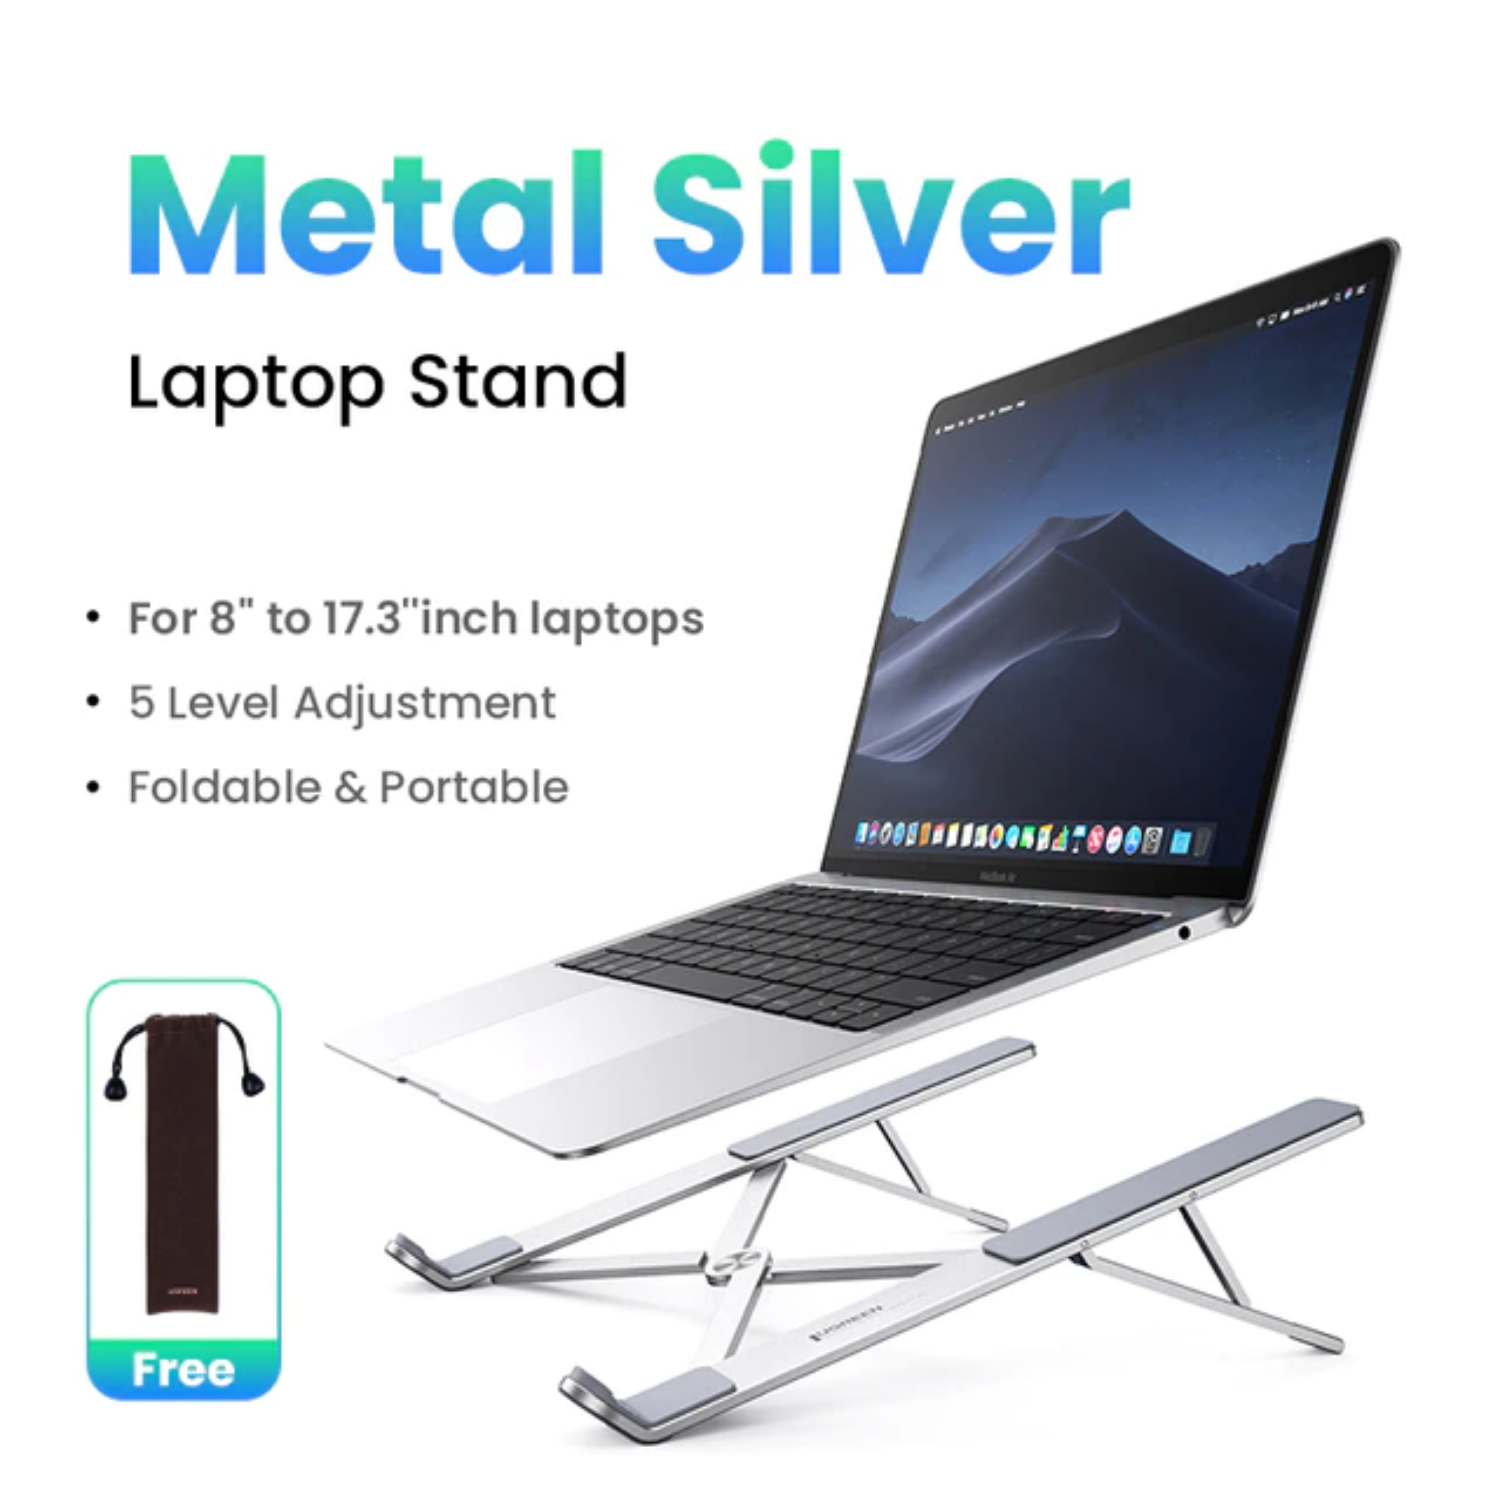 Soporte portátil Ugreen para laptop de 8" a 17.3" Metal Silver (40289)